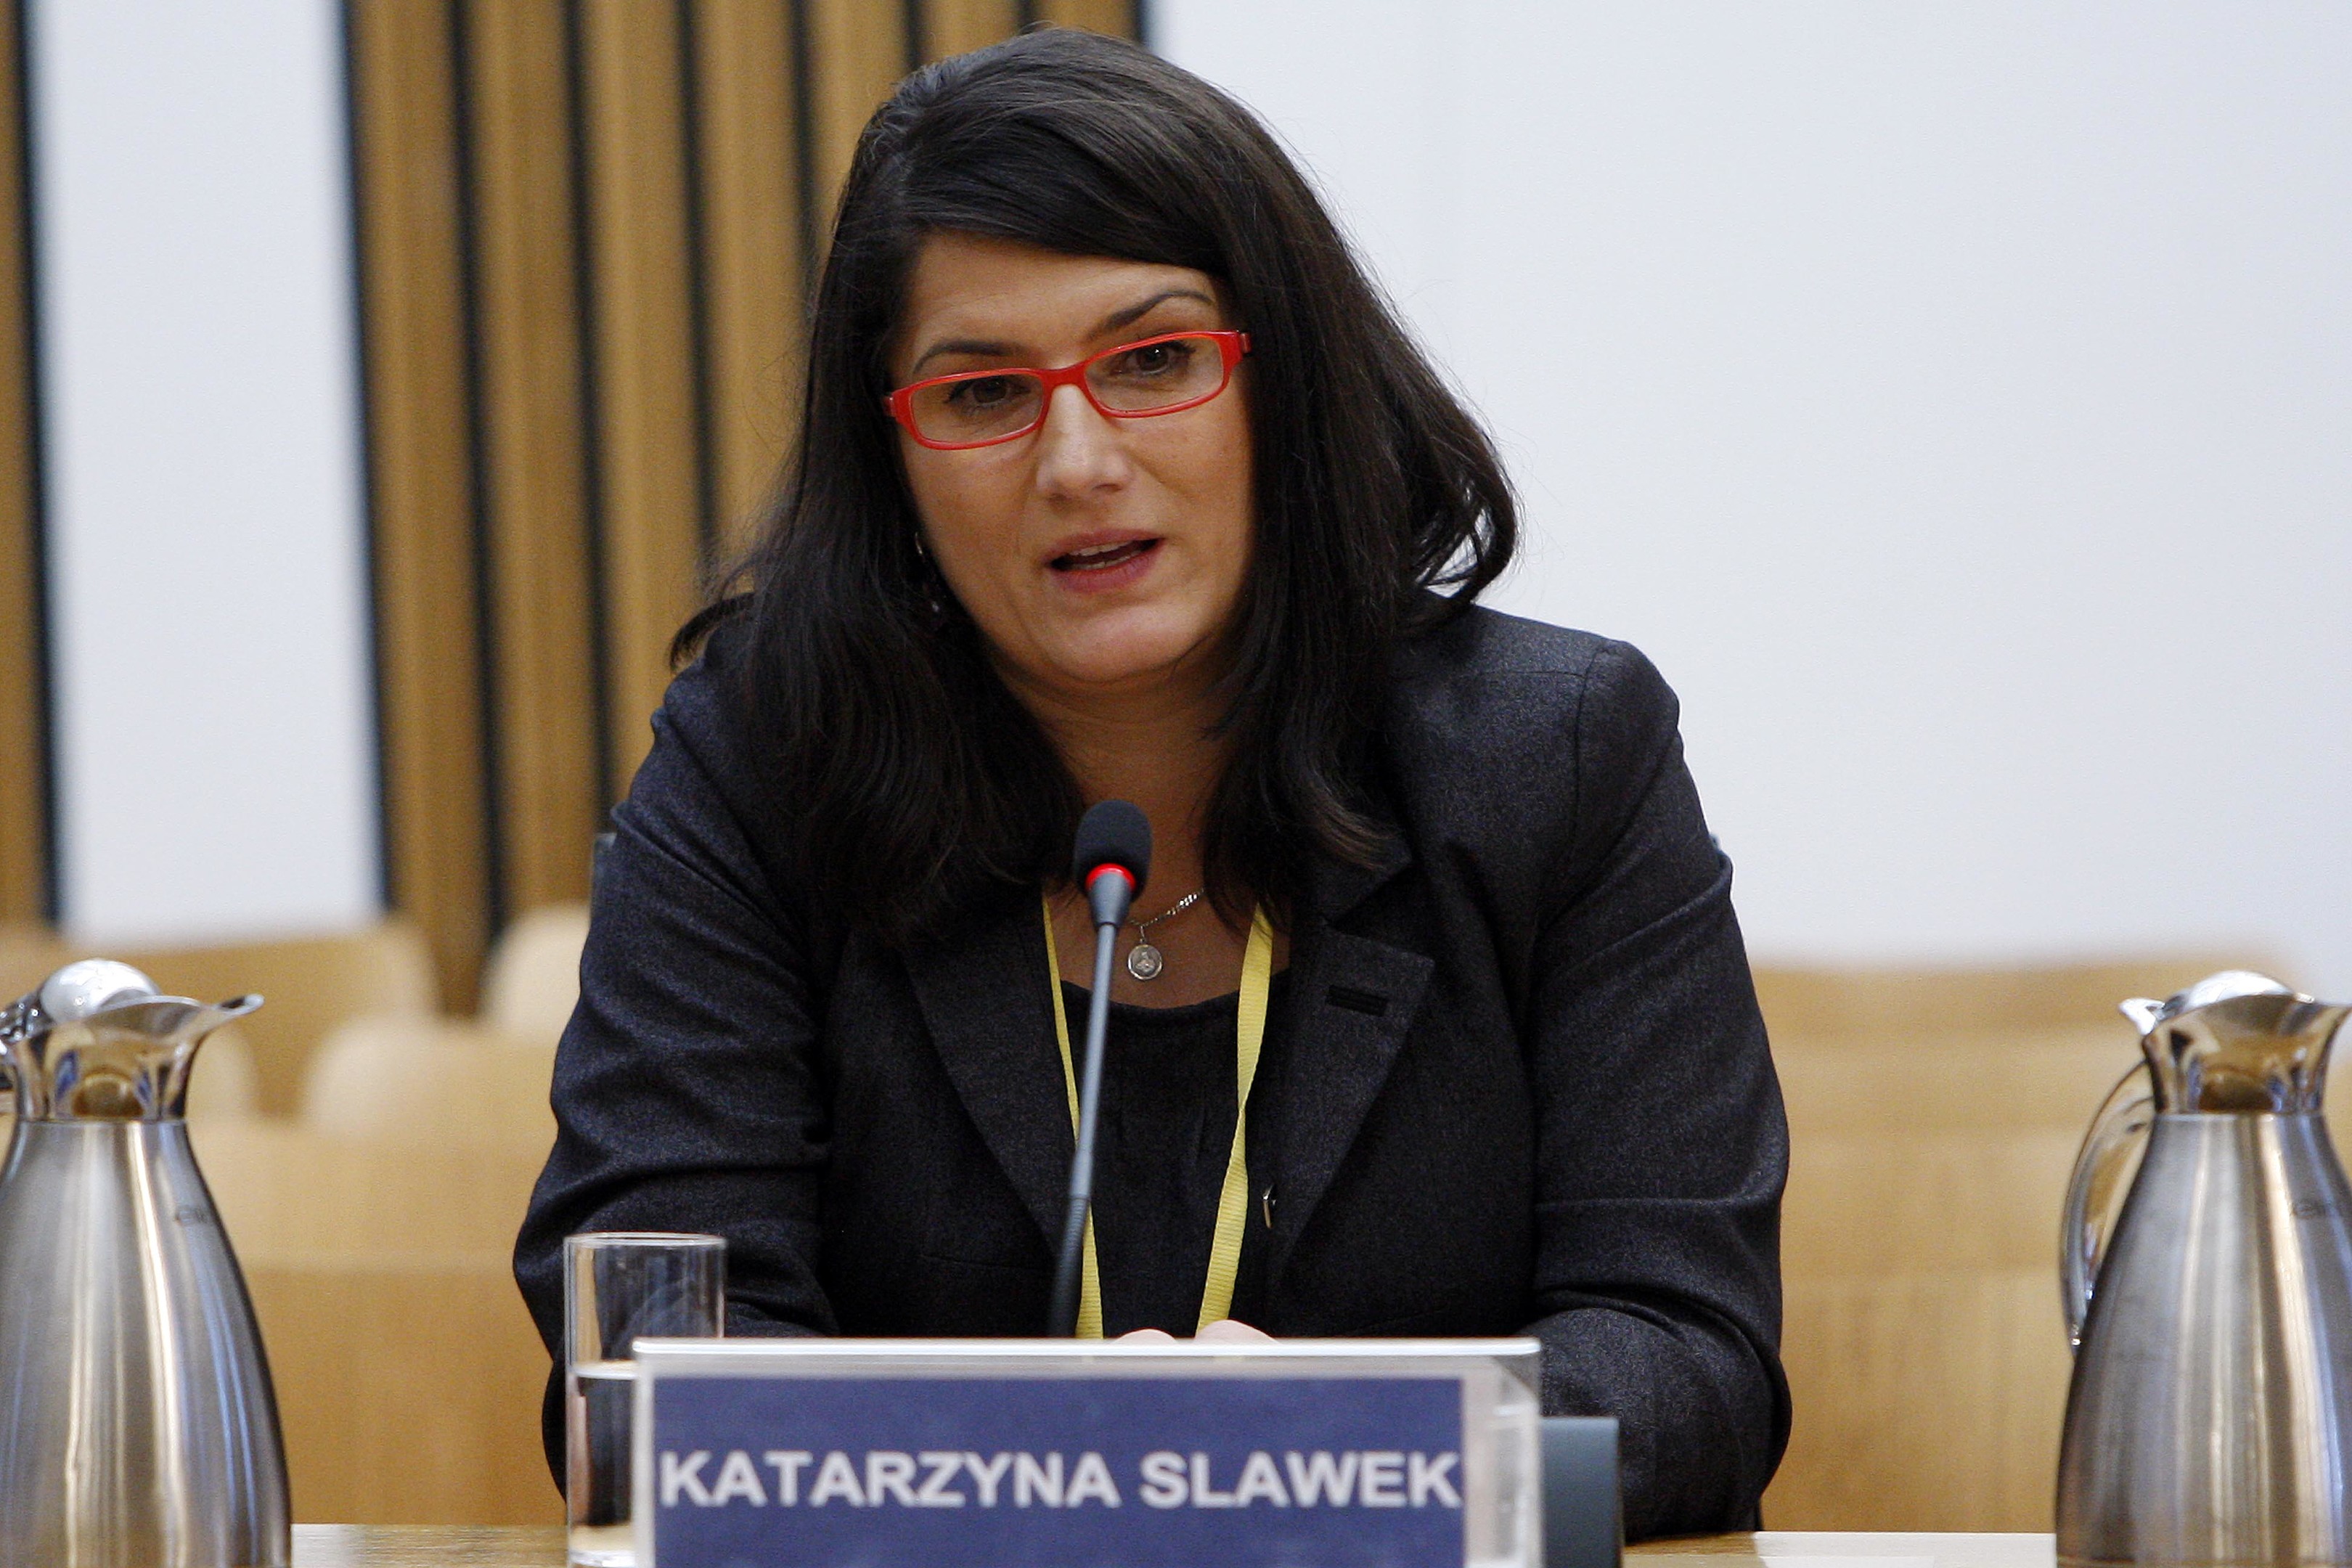 Katarzyna Slawek